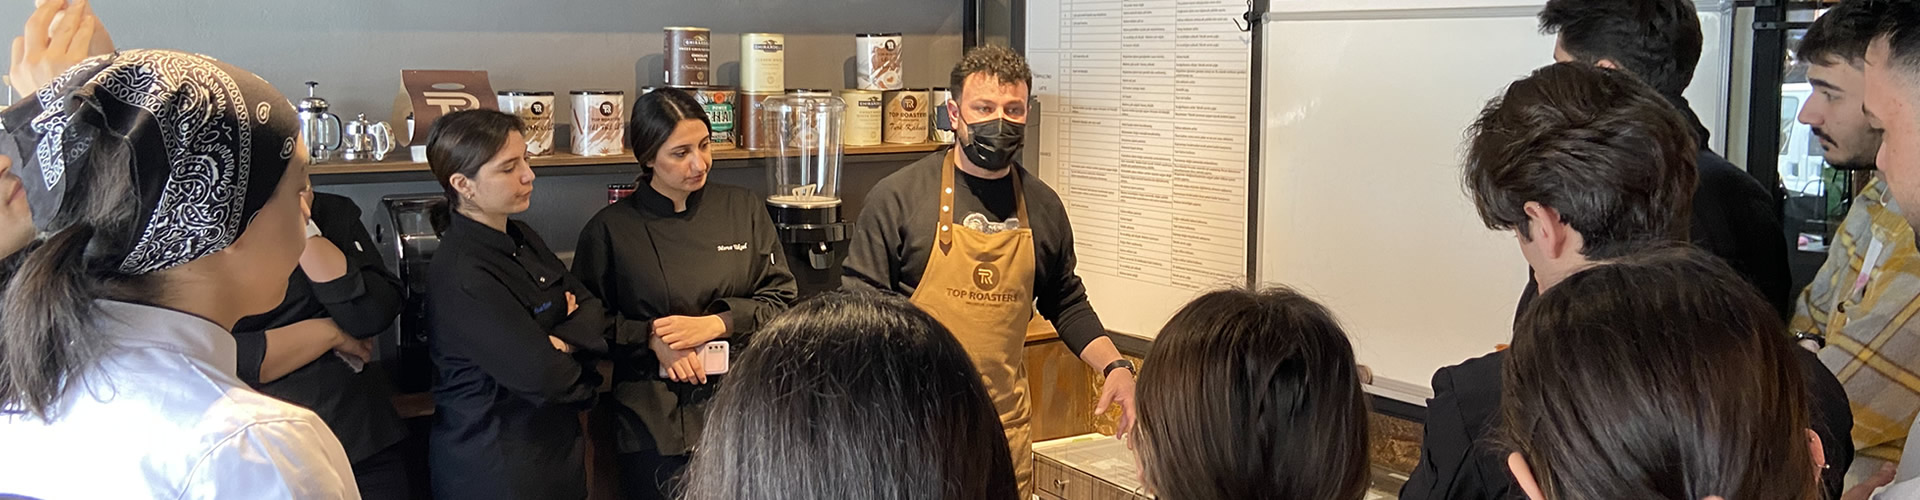 7 Nisan tarihinde düzenlenen etkinlikte MYO Aşçılık Programı öğrencilerimiz kahvenin tarladan fincana uzanan yolculuğuna şahit oldu.